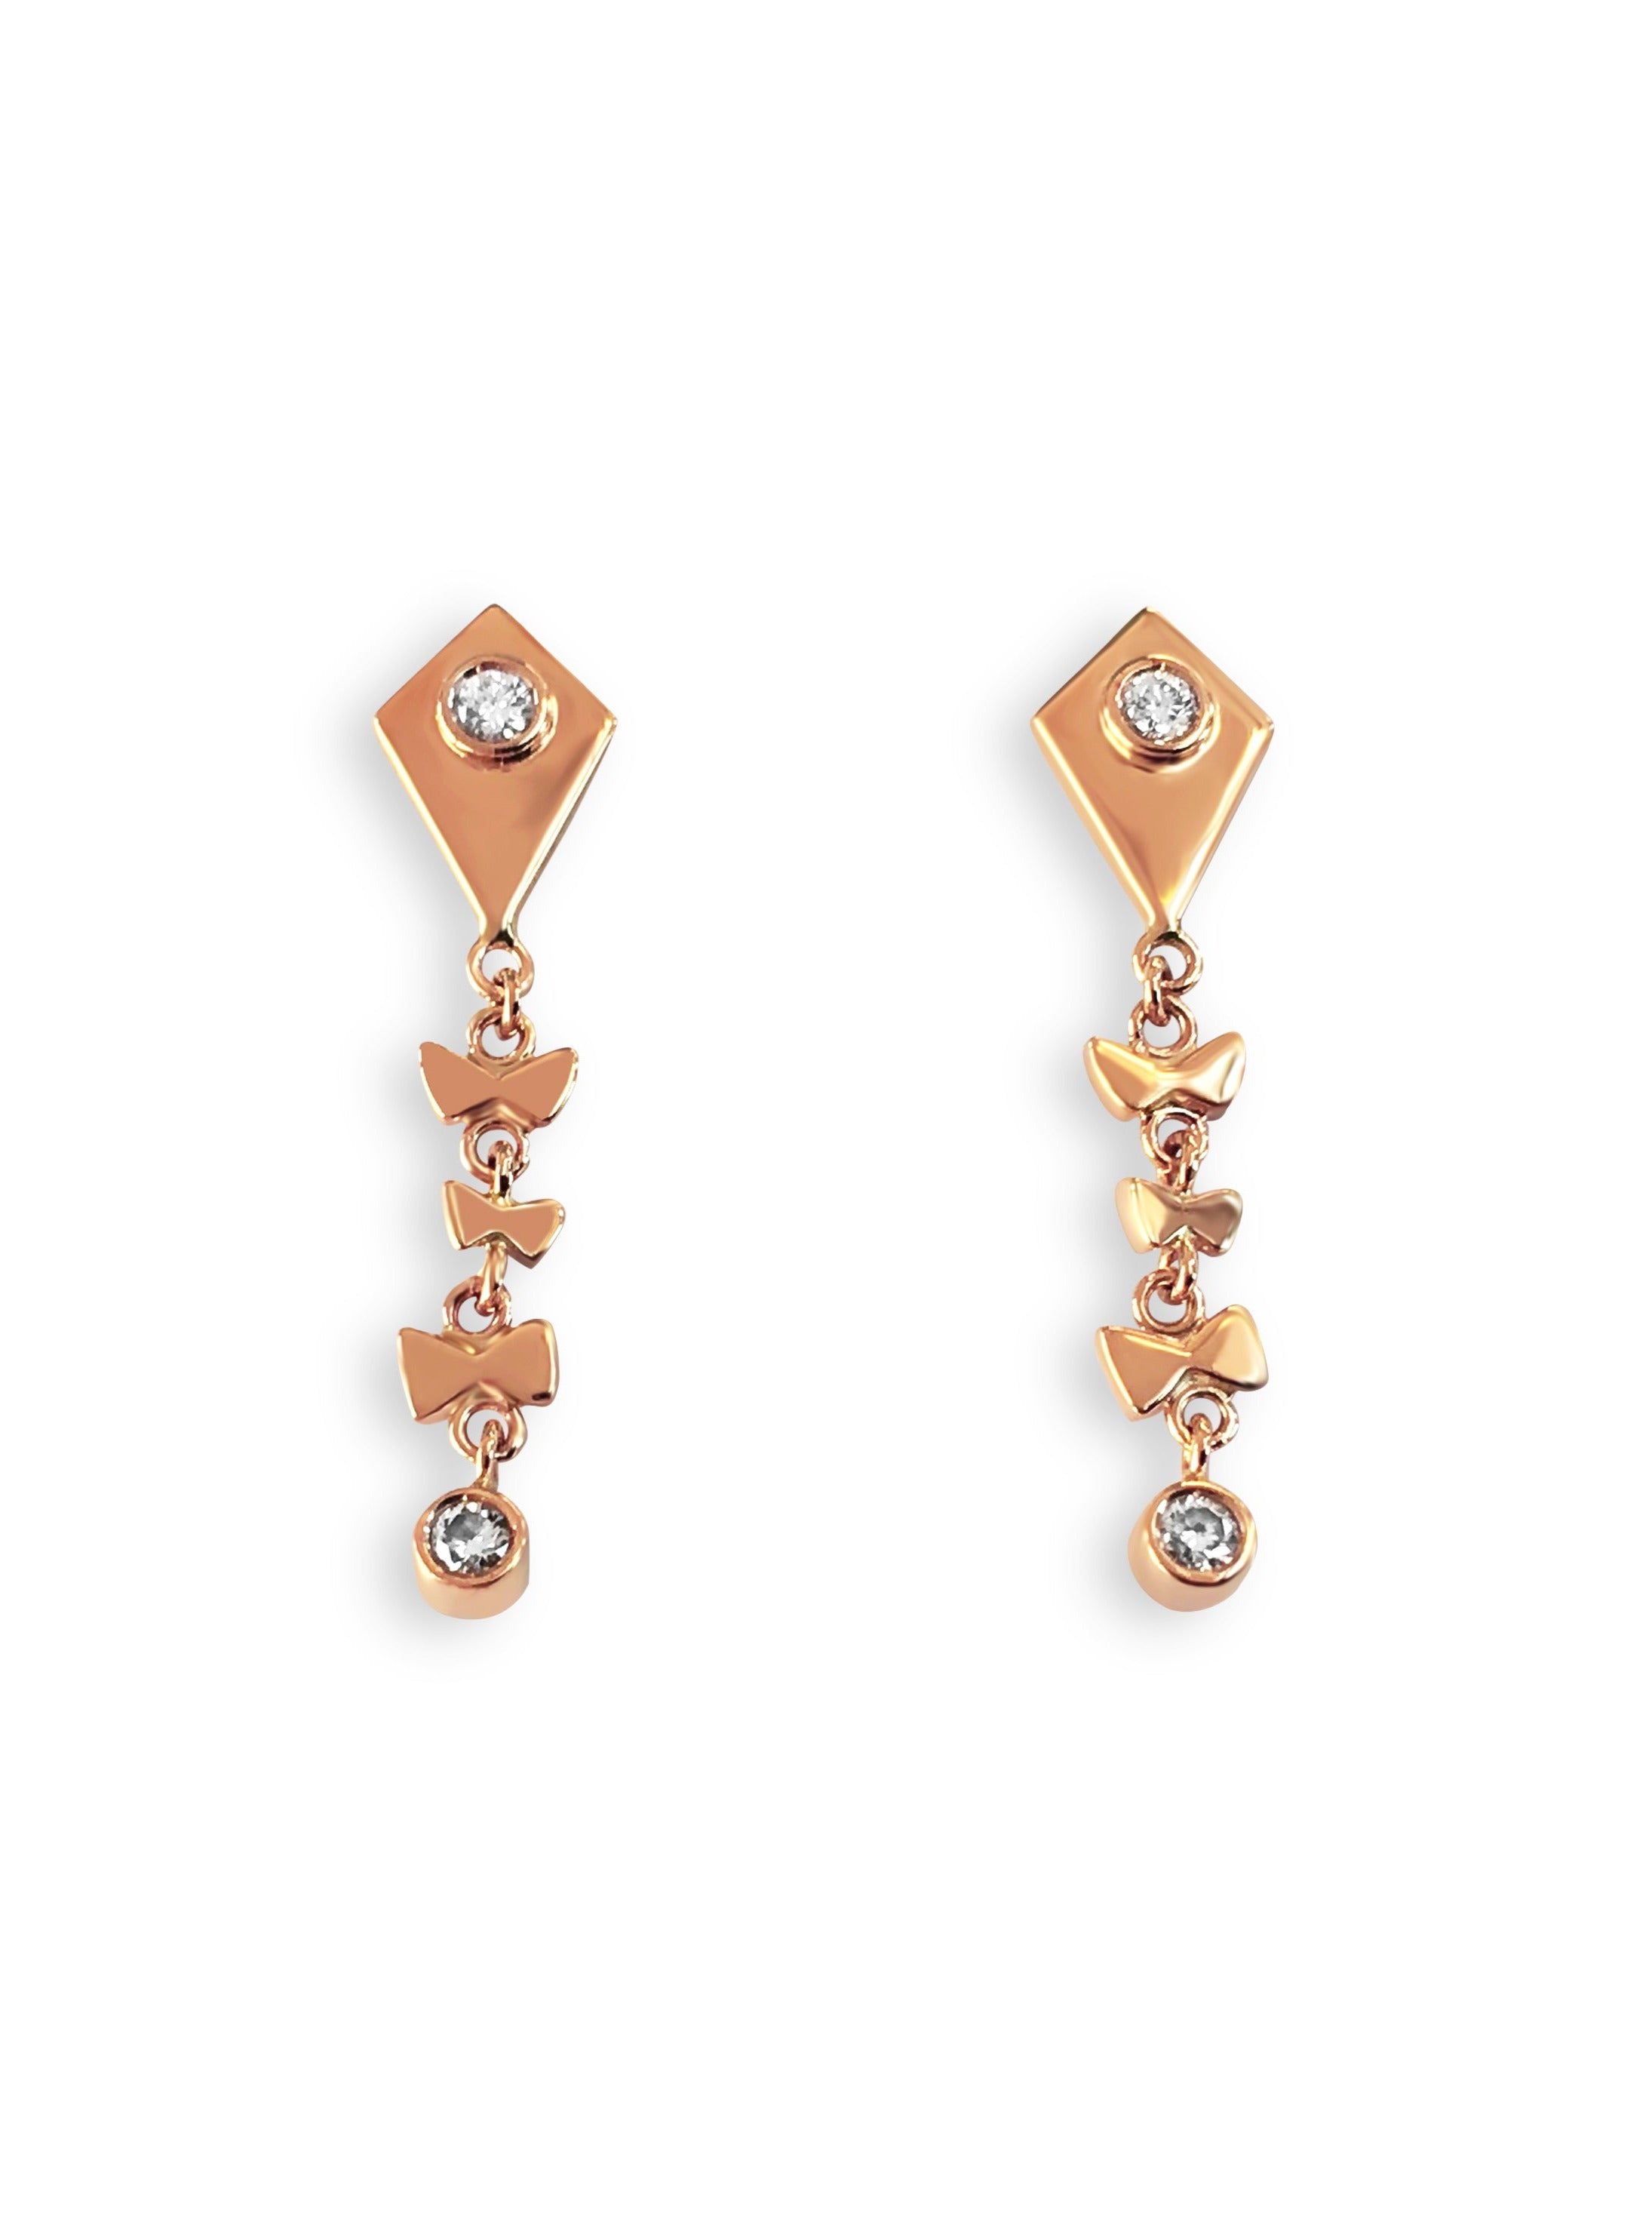 Kite earrings